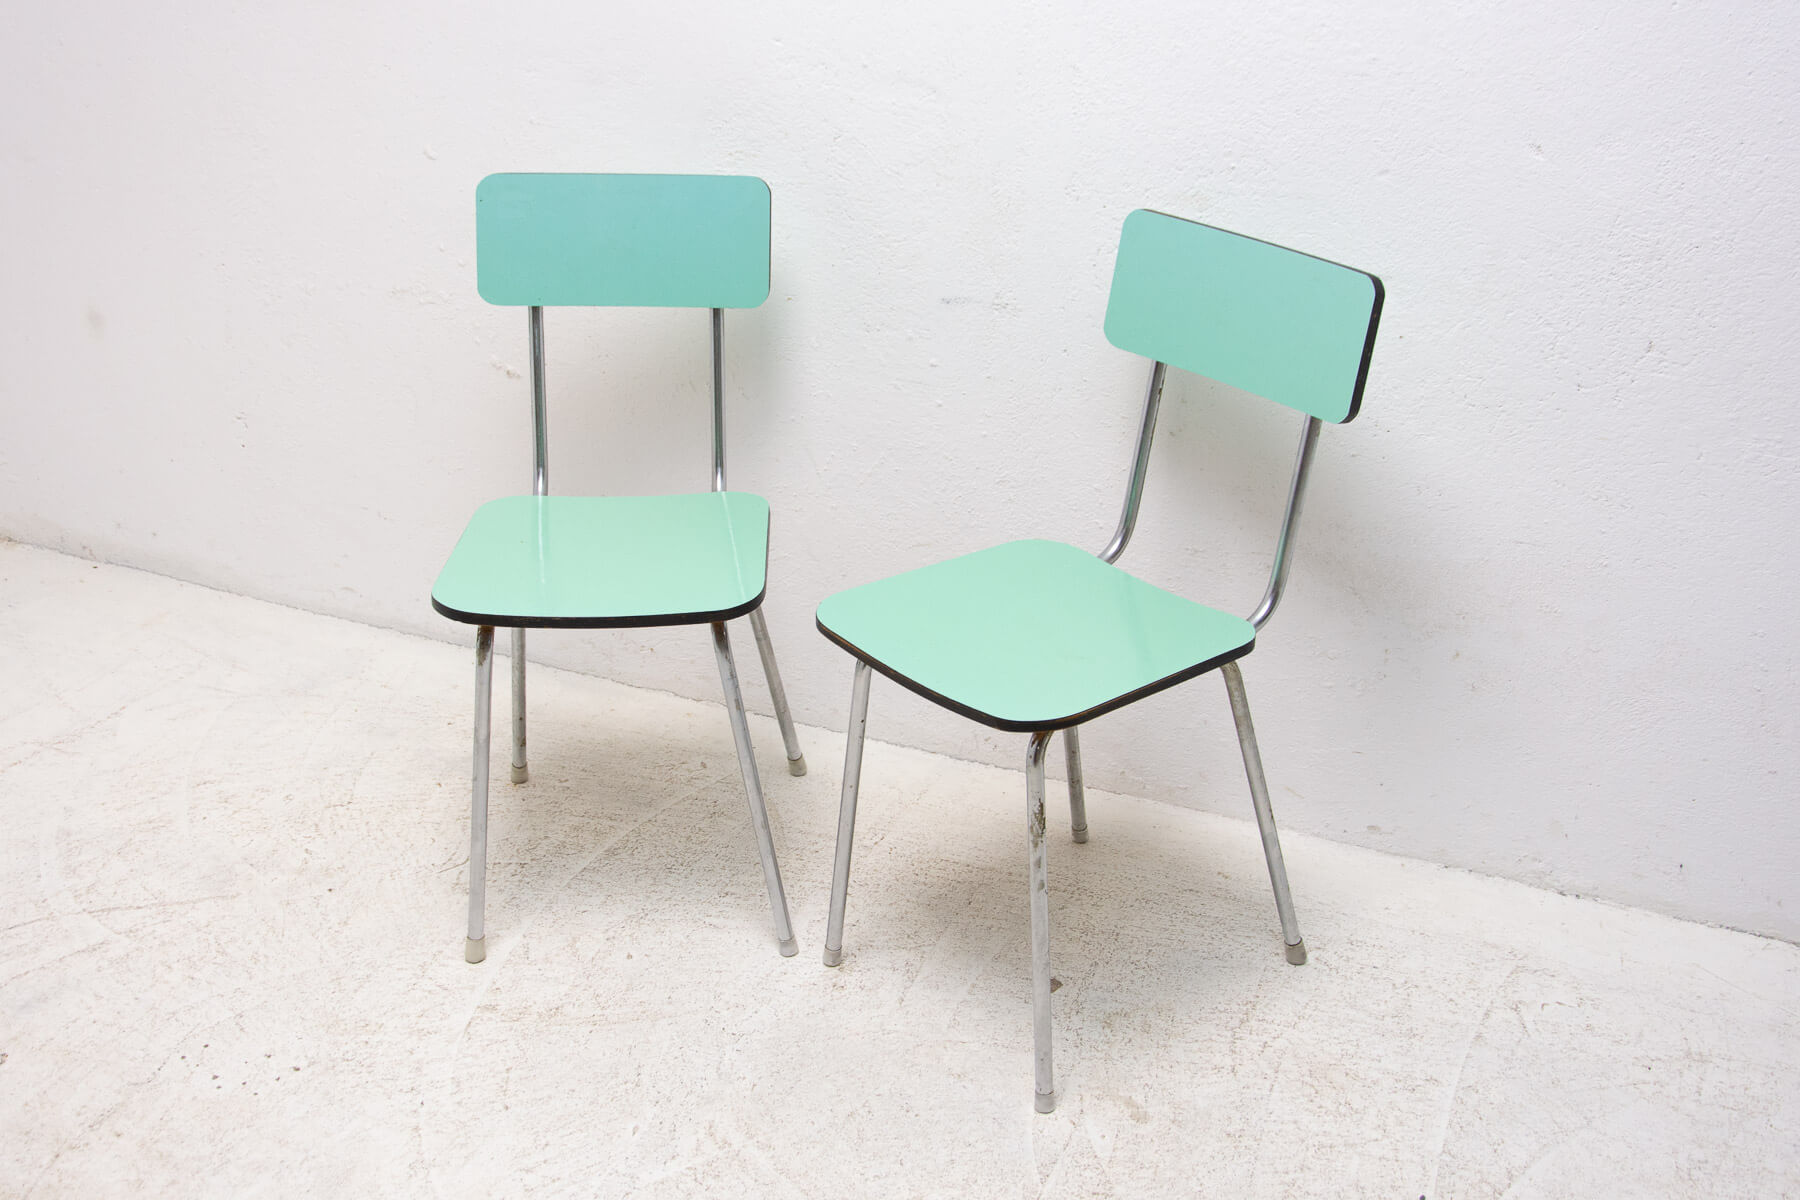 Coppia di sedie in metallo cromato e formica, anni '60